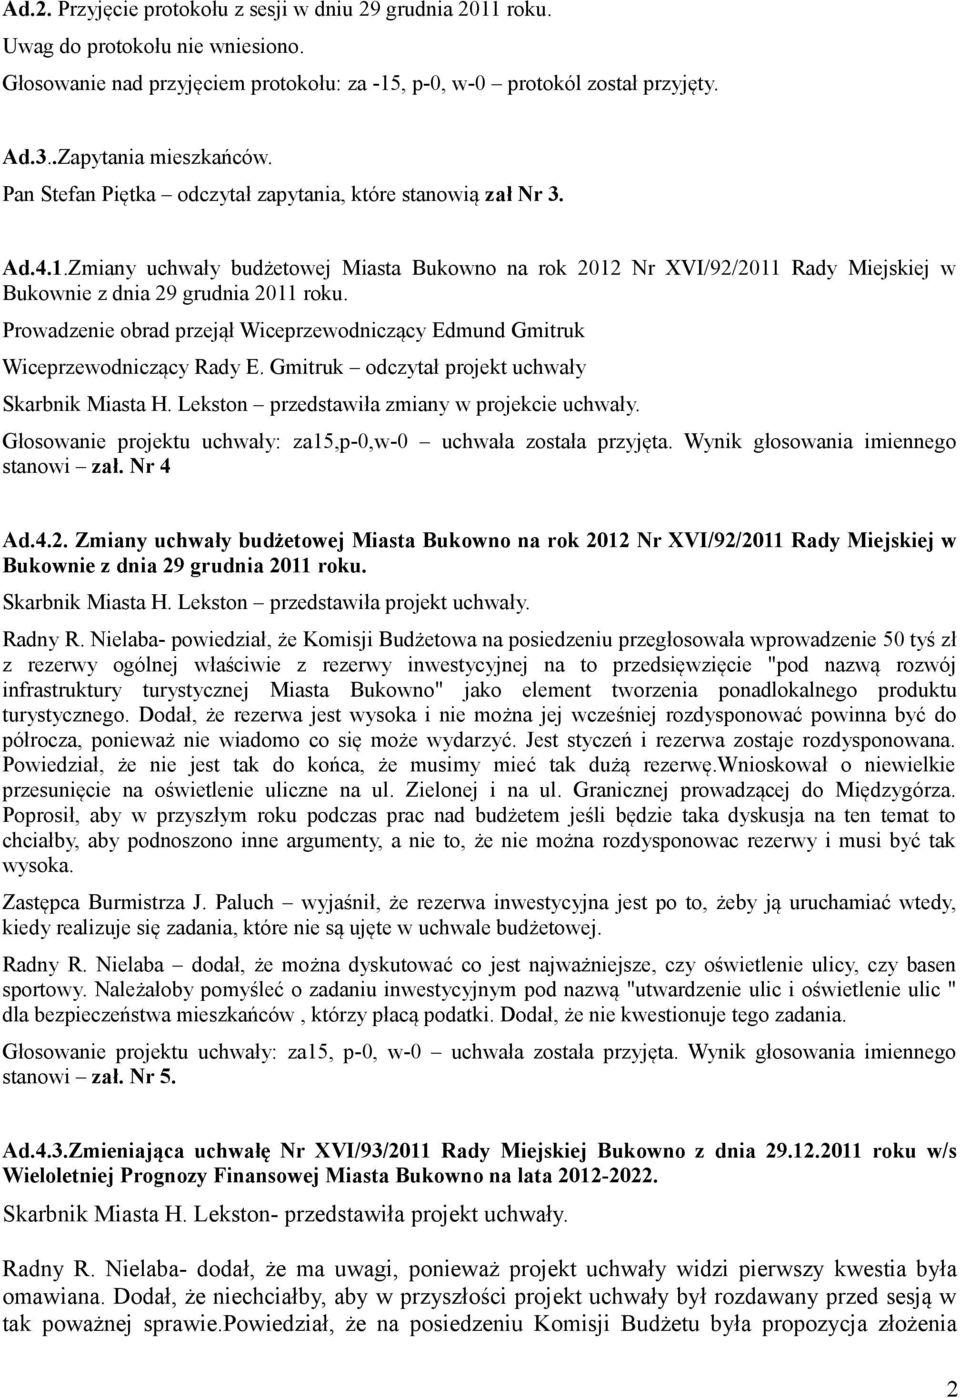 Zmiany uchwały budżetowej Miasta Bukowno na rok 2012 Nr XVI/92/2011 Rady Miejskiej w Bukownie z dnia 29 grudnia 2011 roku.